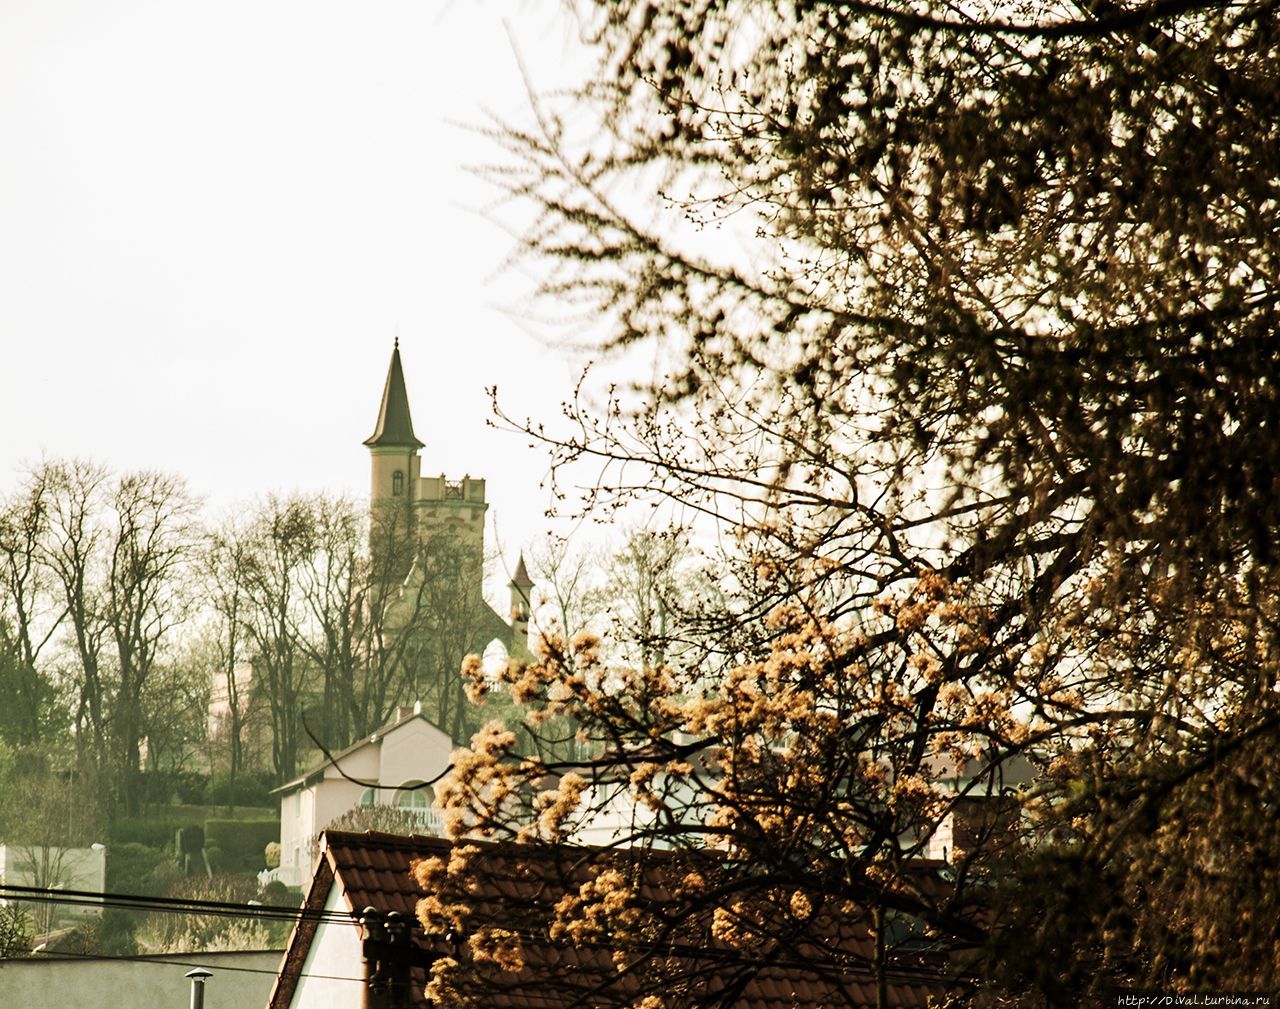 Солнца теплая купель — апрель Теплице, Чехия